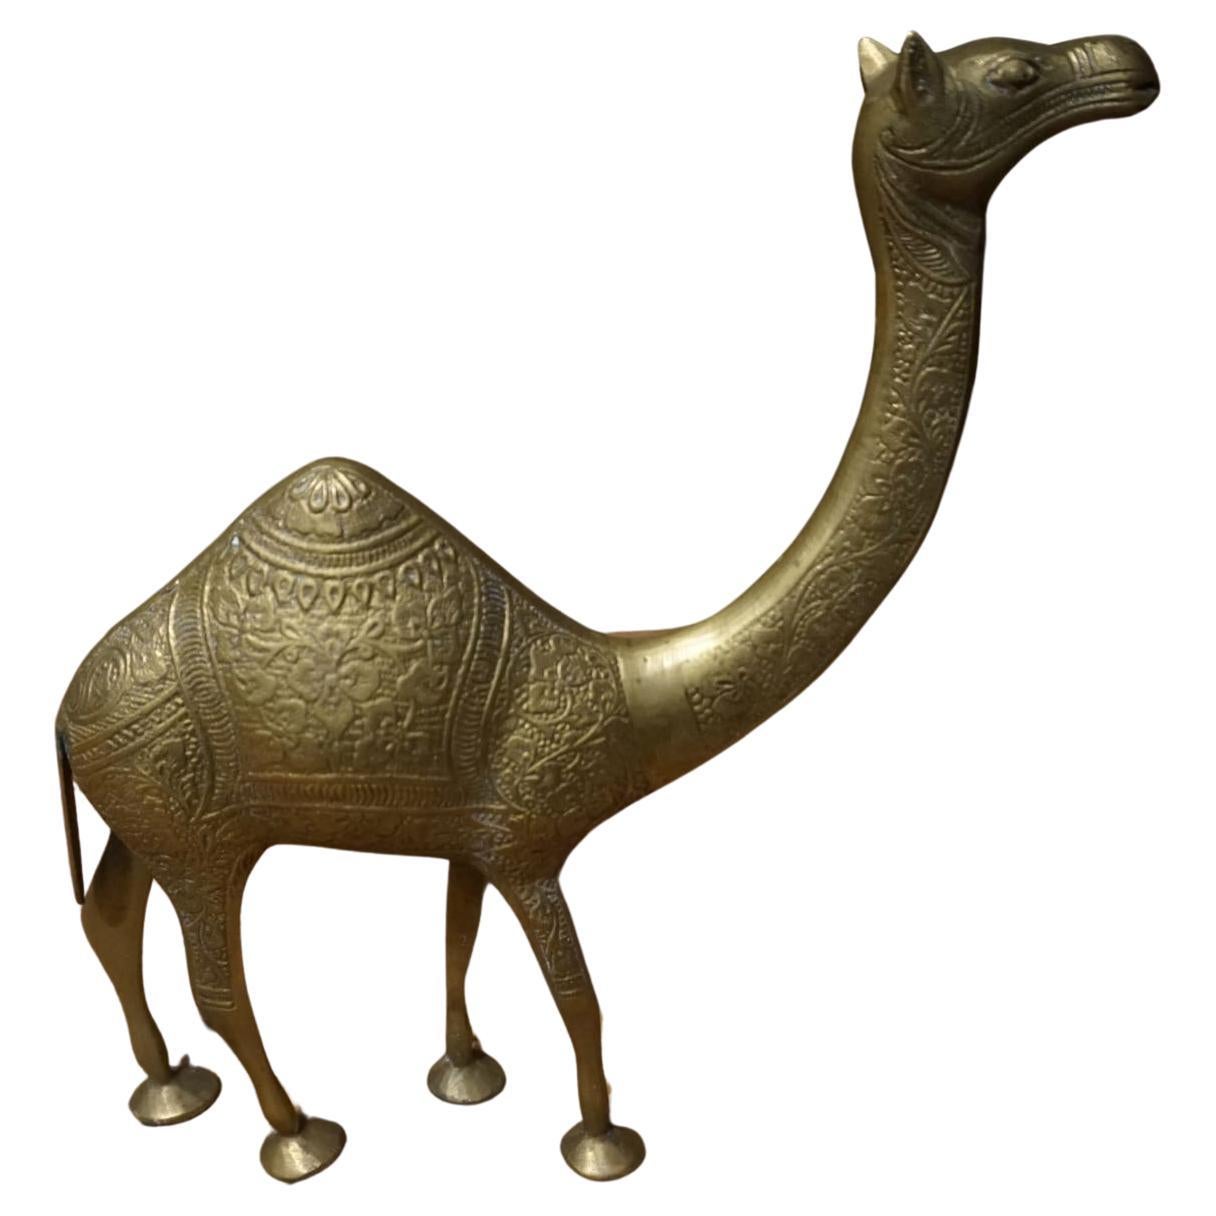 1950's Solid Brass Hand Engraved Camel Sculpture Objet D' Art For Sale